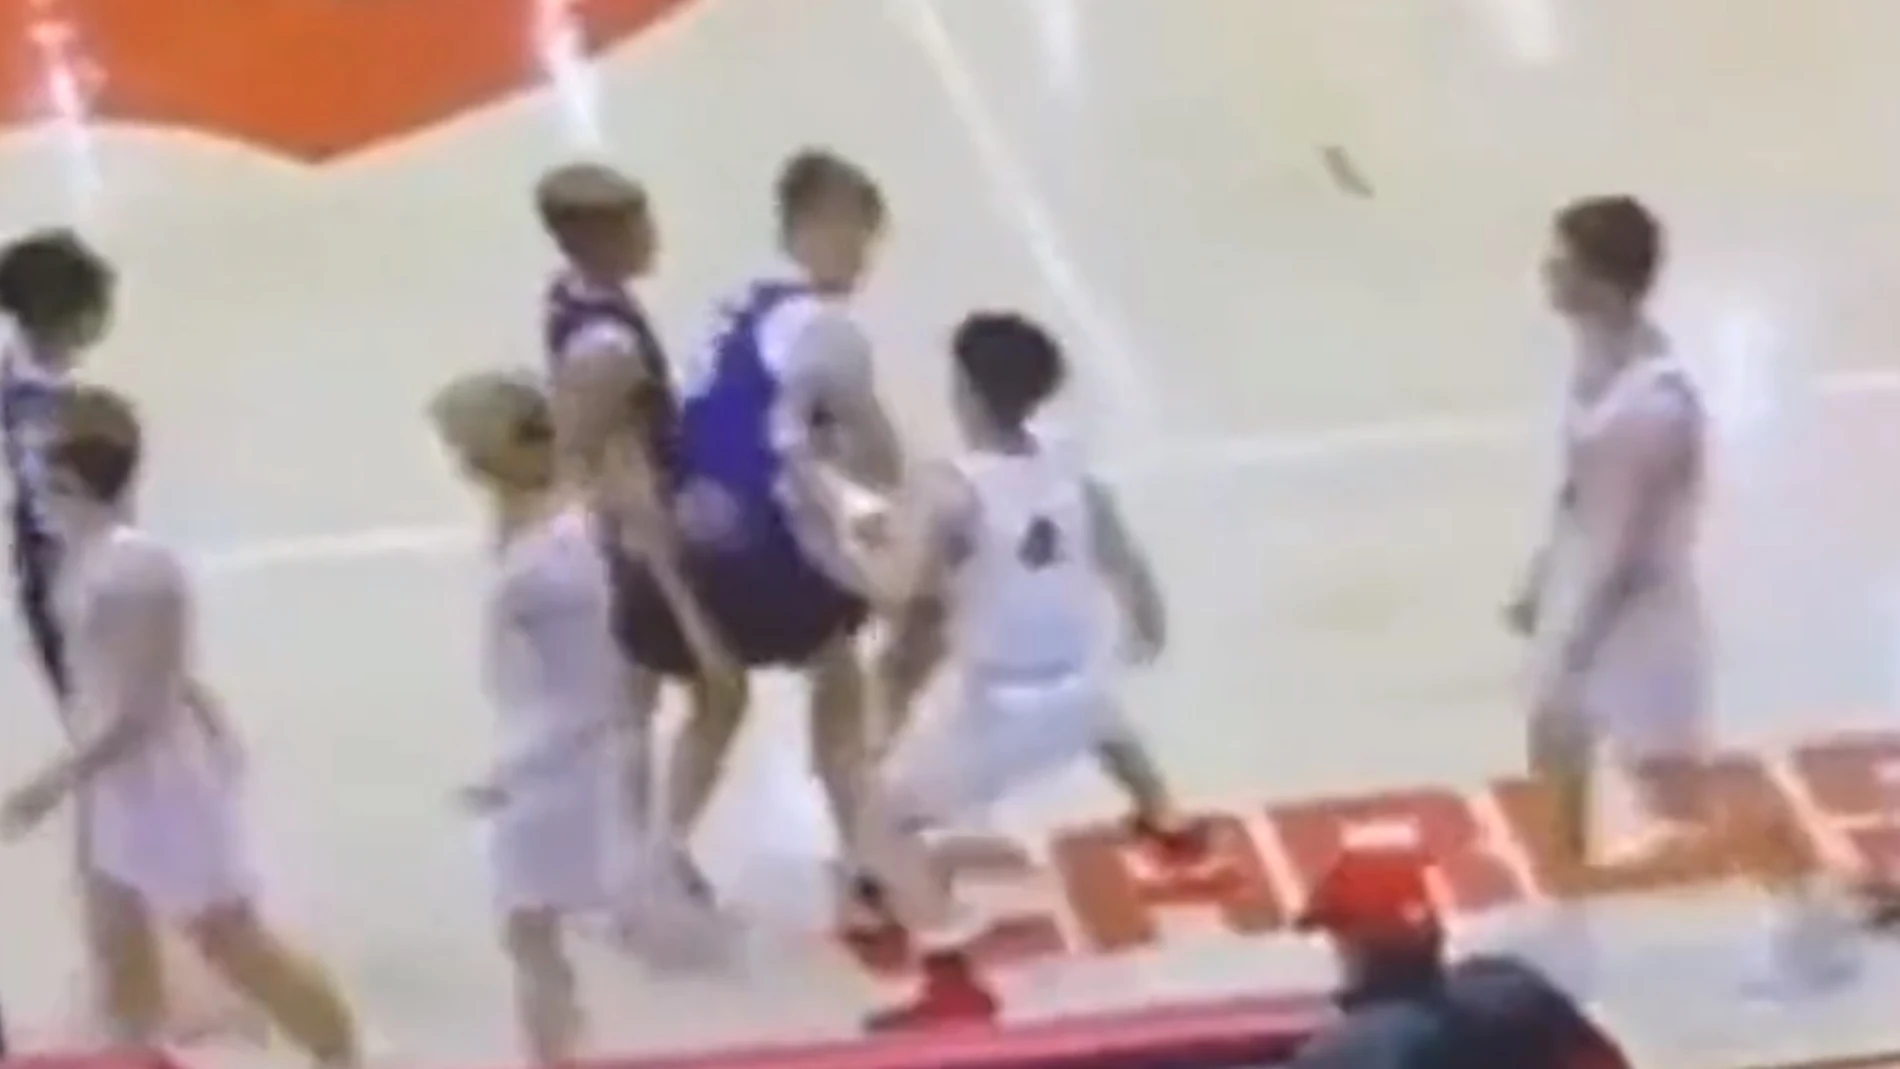 La brutal agresión y posterior pelea en un partido de baloncesto de niños en Estados Unidos